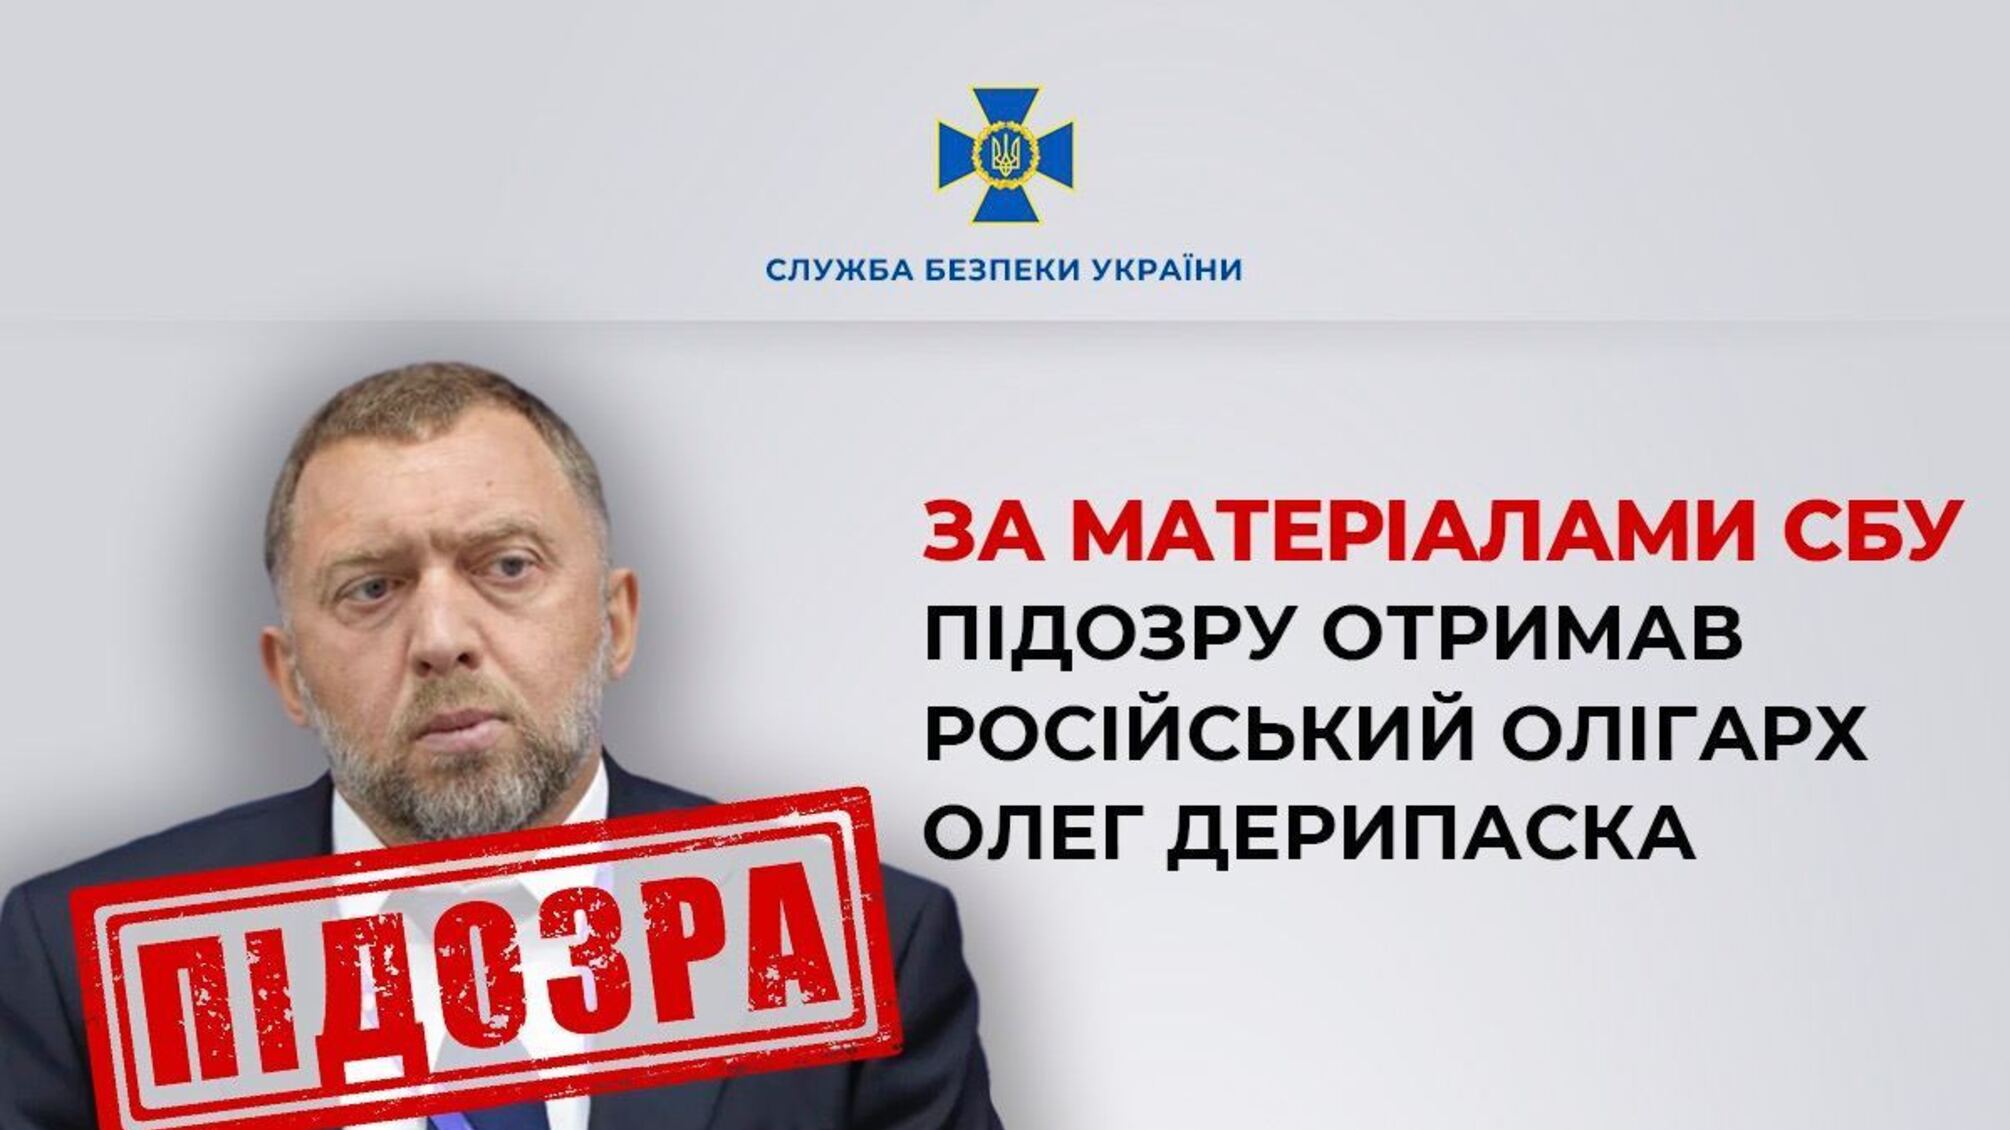 СБУ повідомила про підозру російському олігарху Дерипасці і затримала його українських топменеджерів